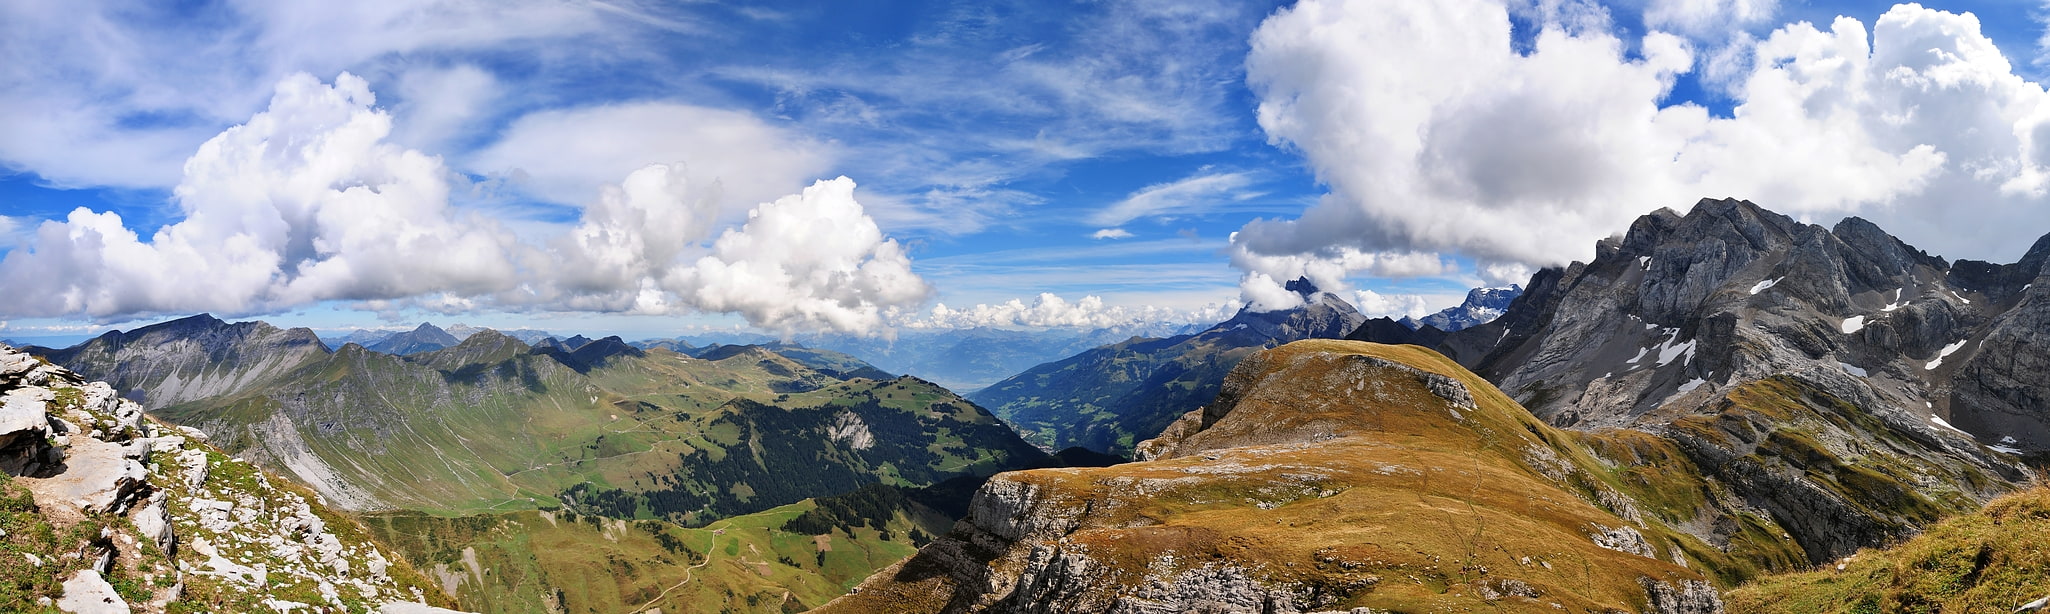 Val d'Illiez, Switzerland